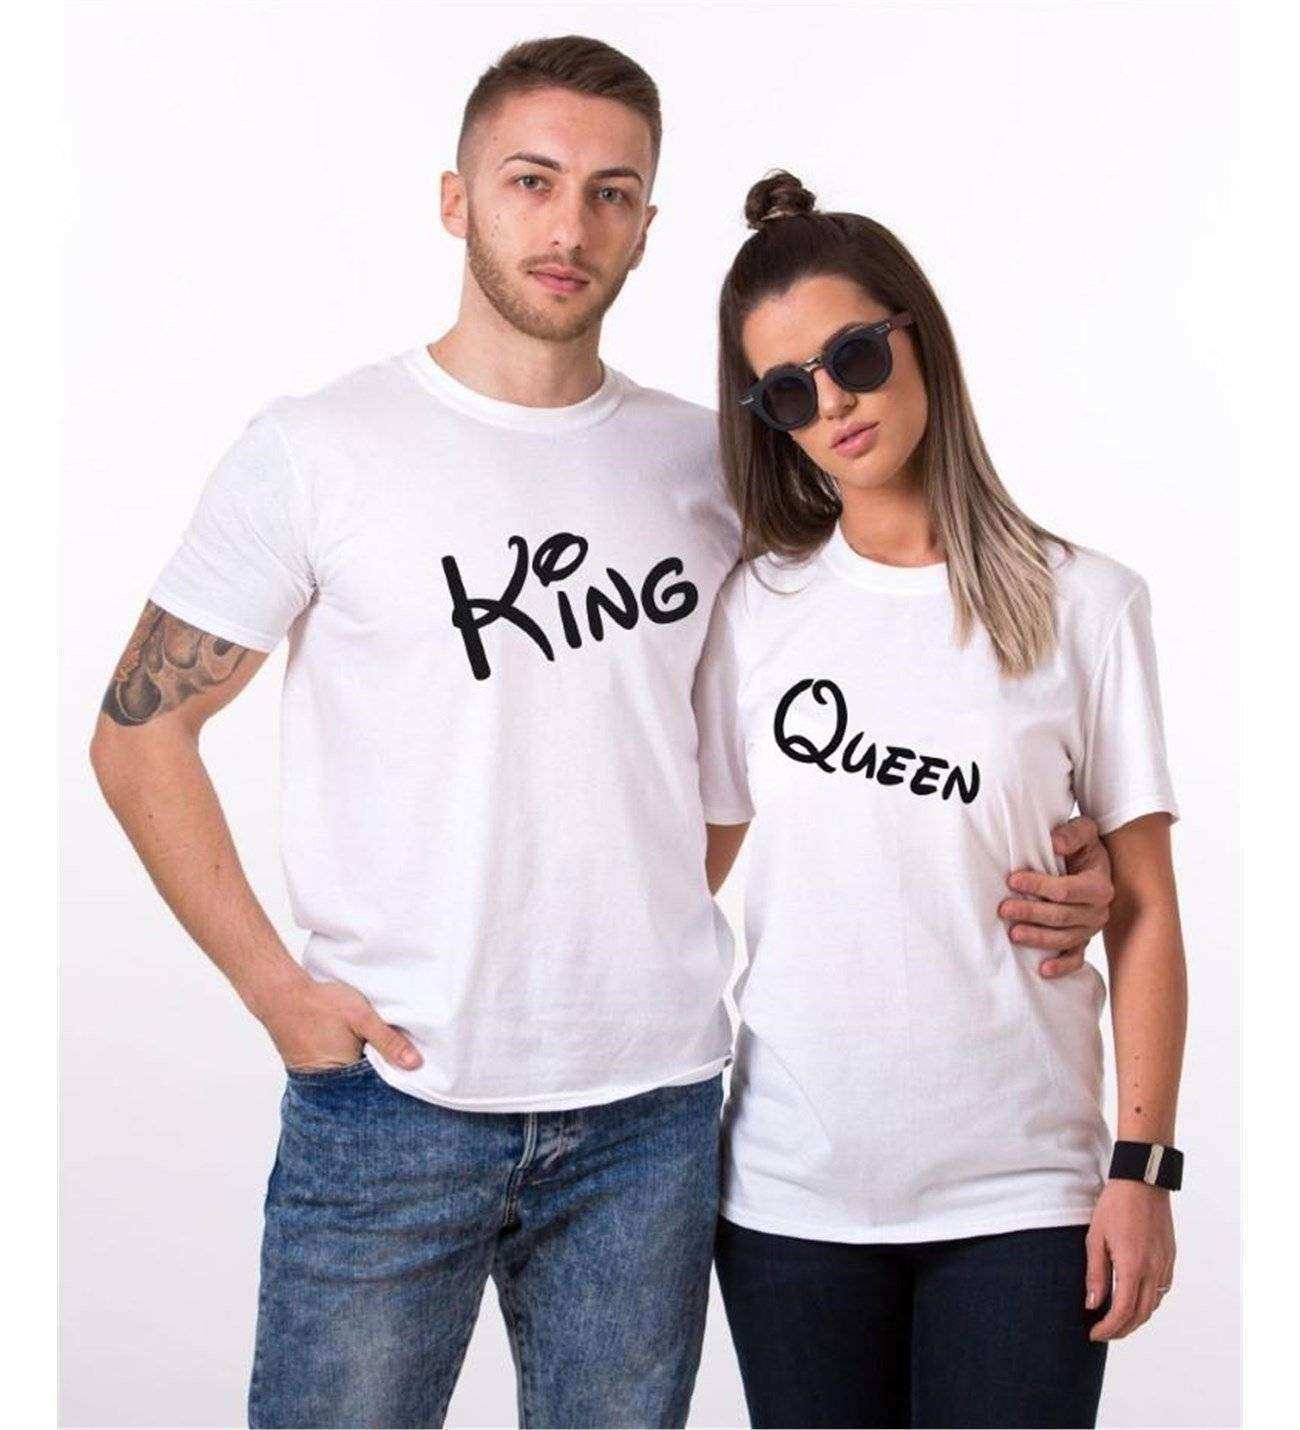 Tshirthane Queen King  Sevgili Kombinleri Tshirt Çift Kombini